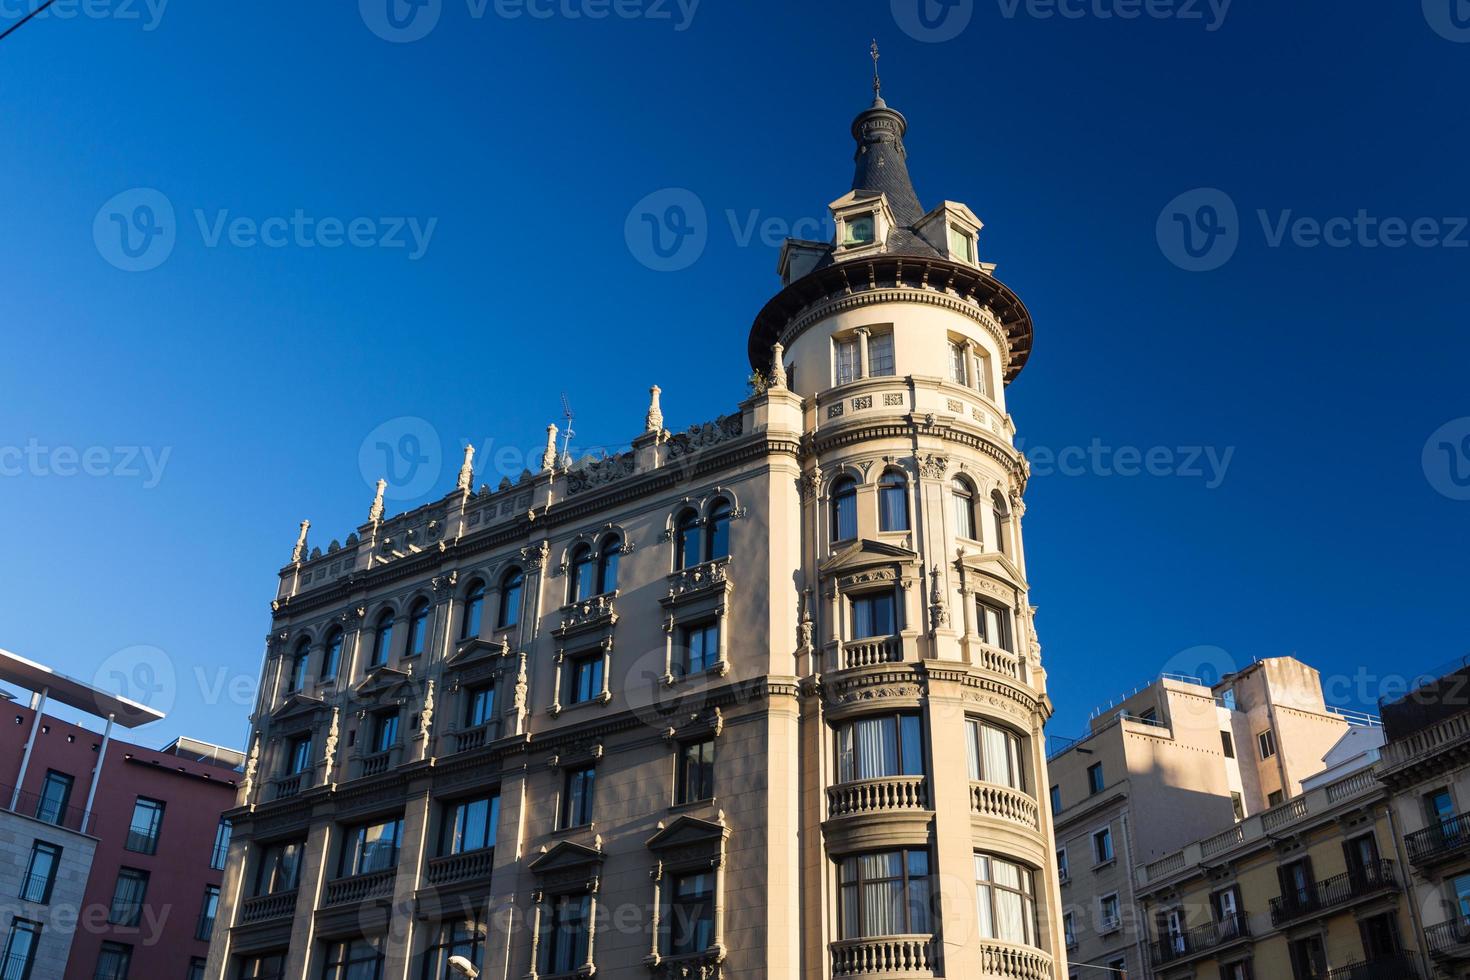 fachadas de edifícios de grande interesse arquitetônico na cidade de barcelona - espanha foto